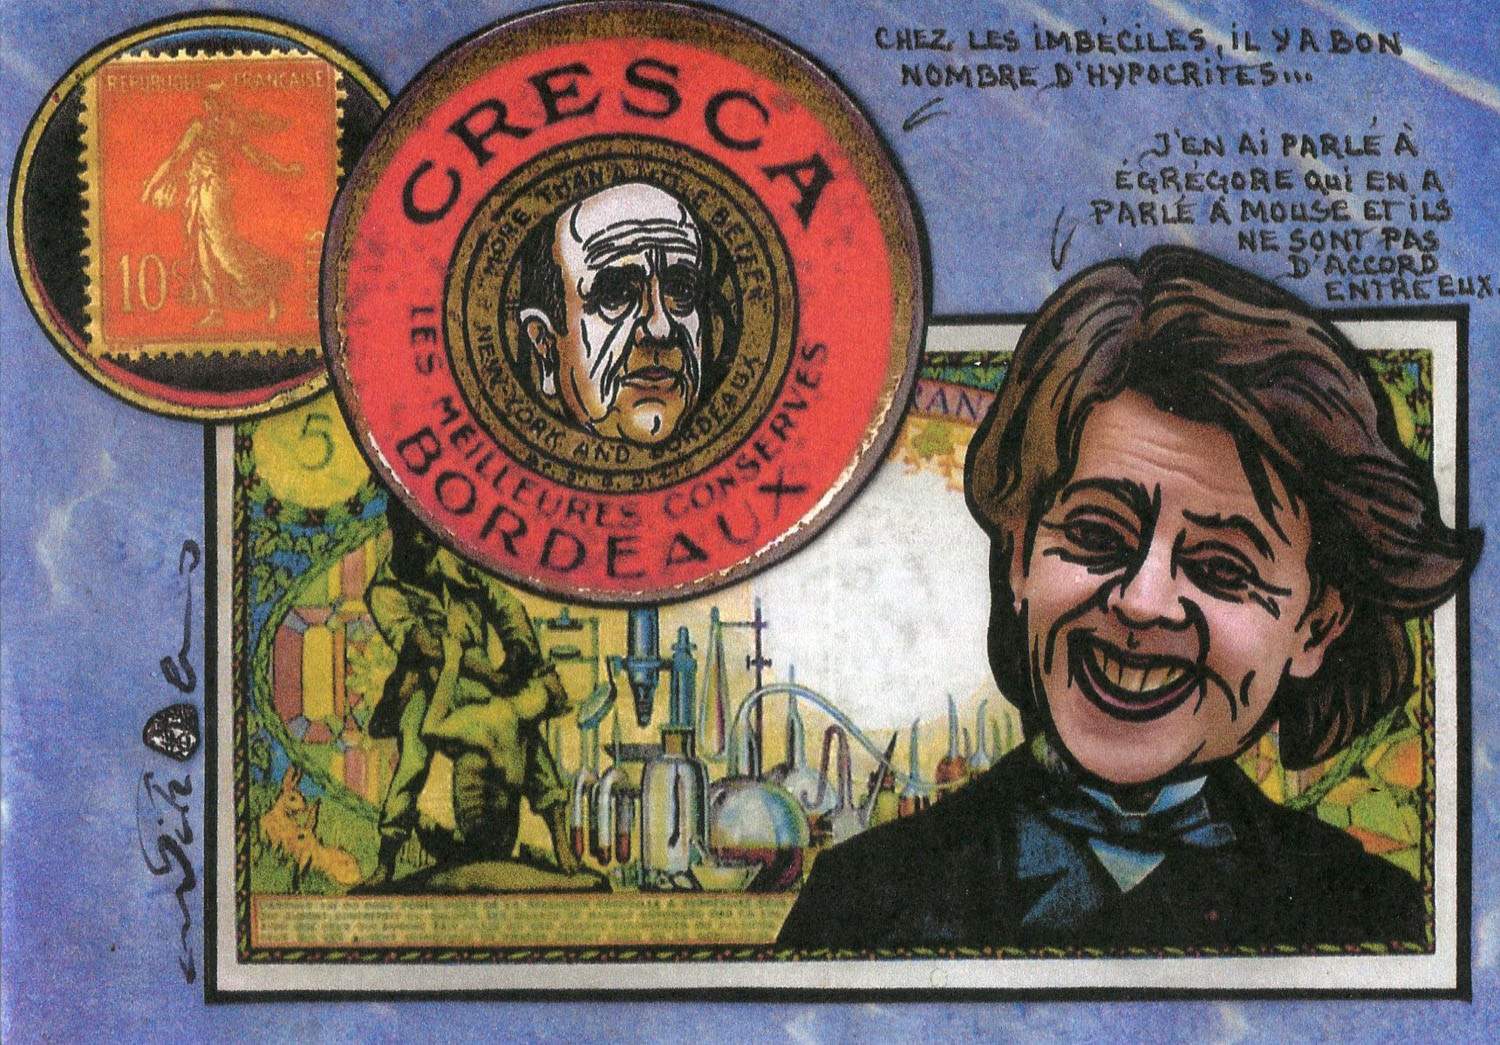 Exemple 243 de carte postale signée Jacques Lardie dit Jihel utilisant le timbre-monnaie Cresca comme illustration